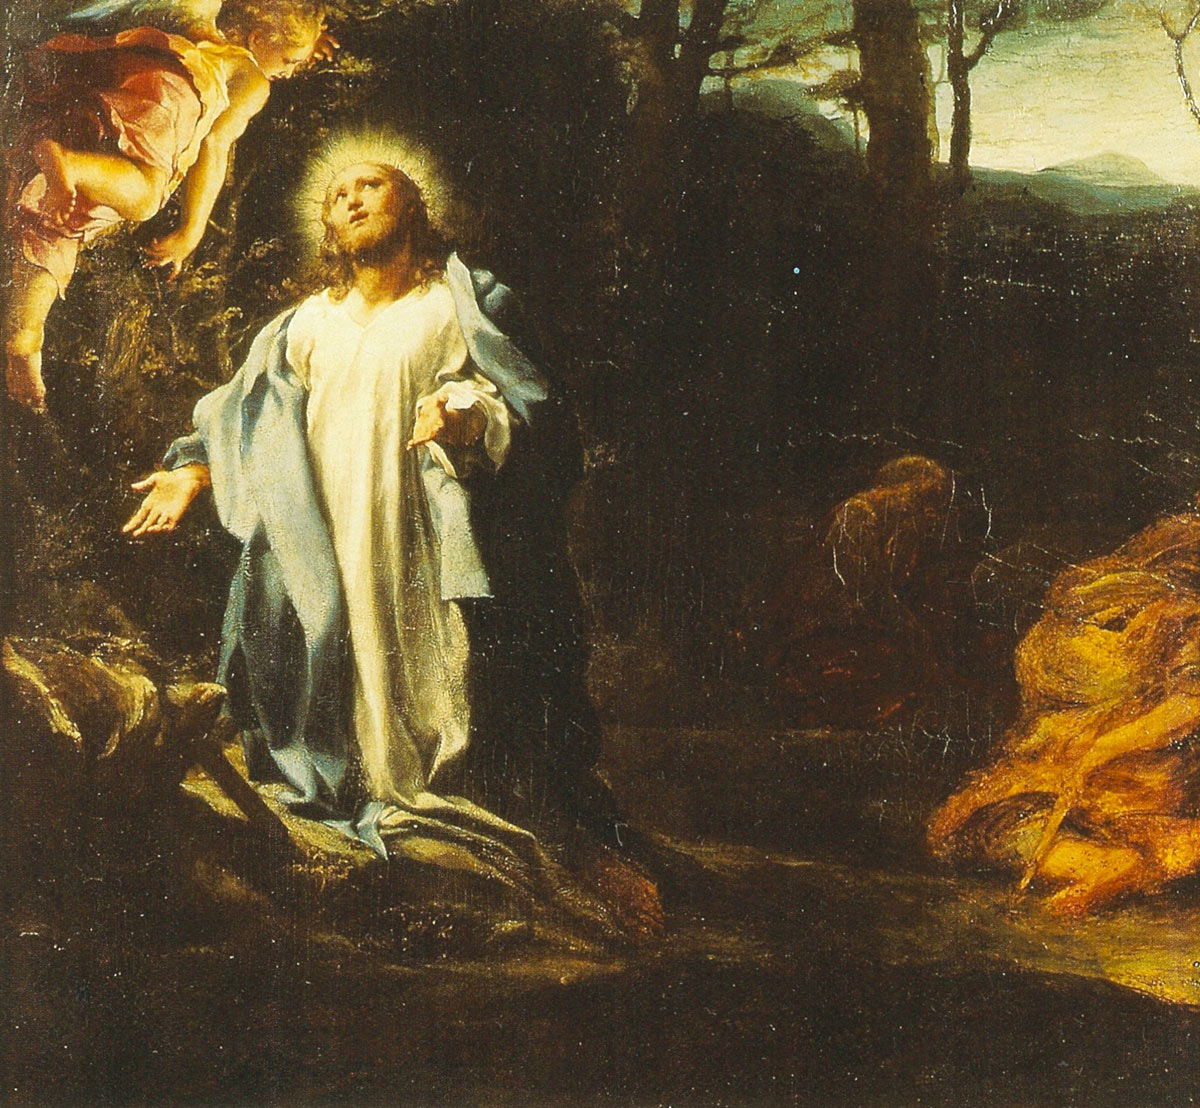 Correggio, L'Orazione di Gesù nell'orto (olio su tavola, 37 x 40 cm; Londra, Hapsley House)

